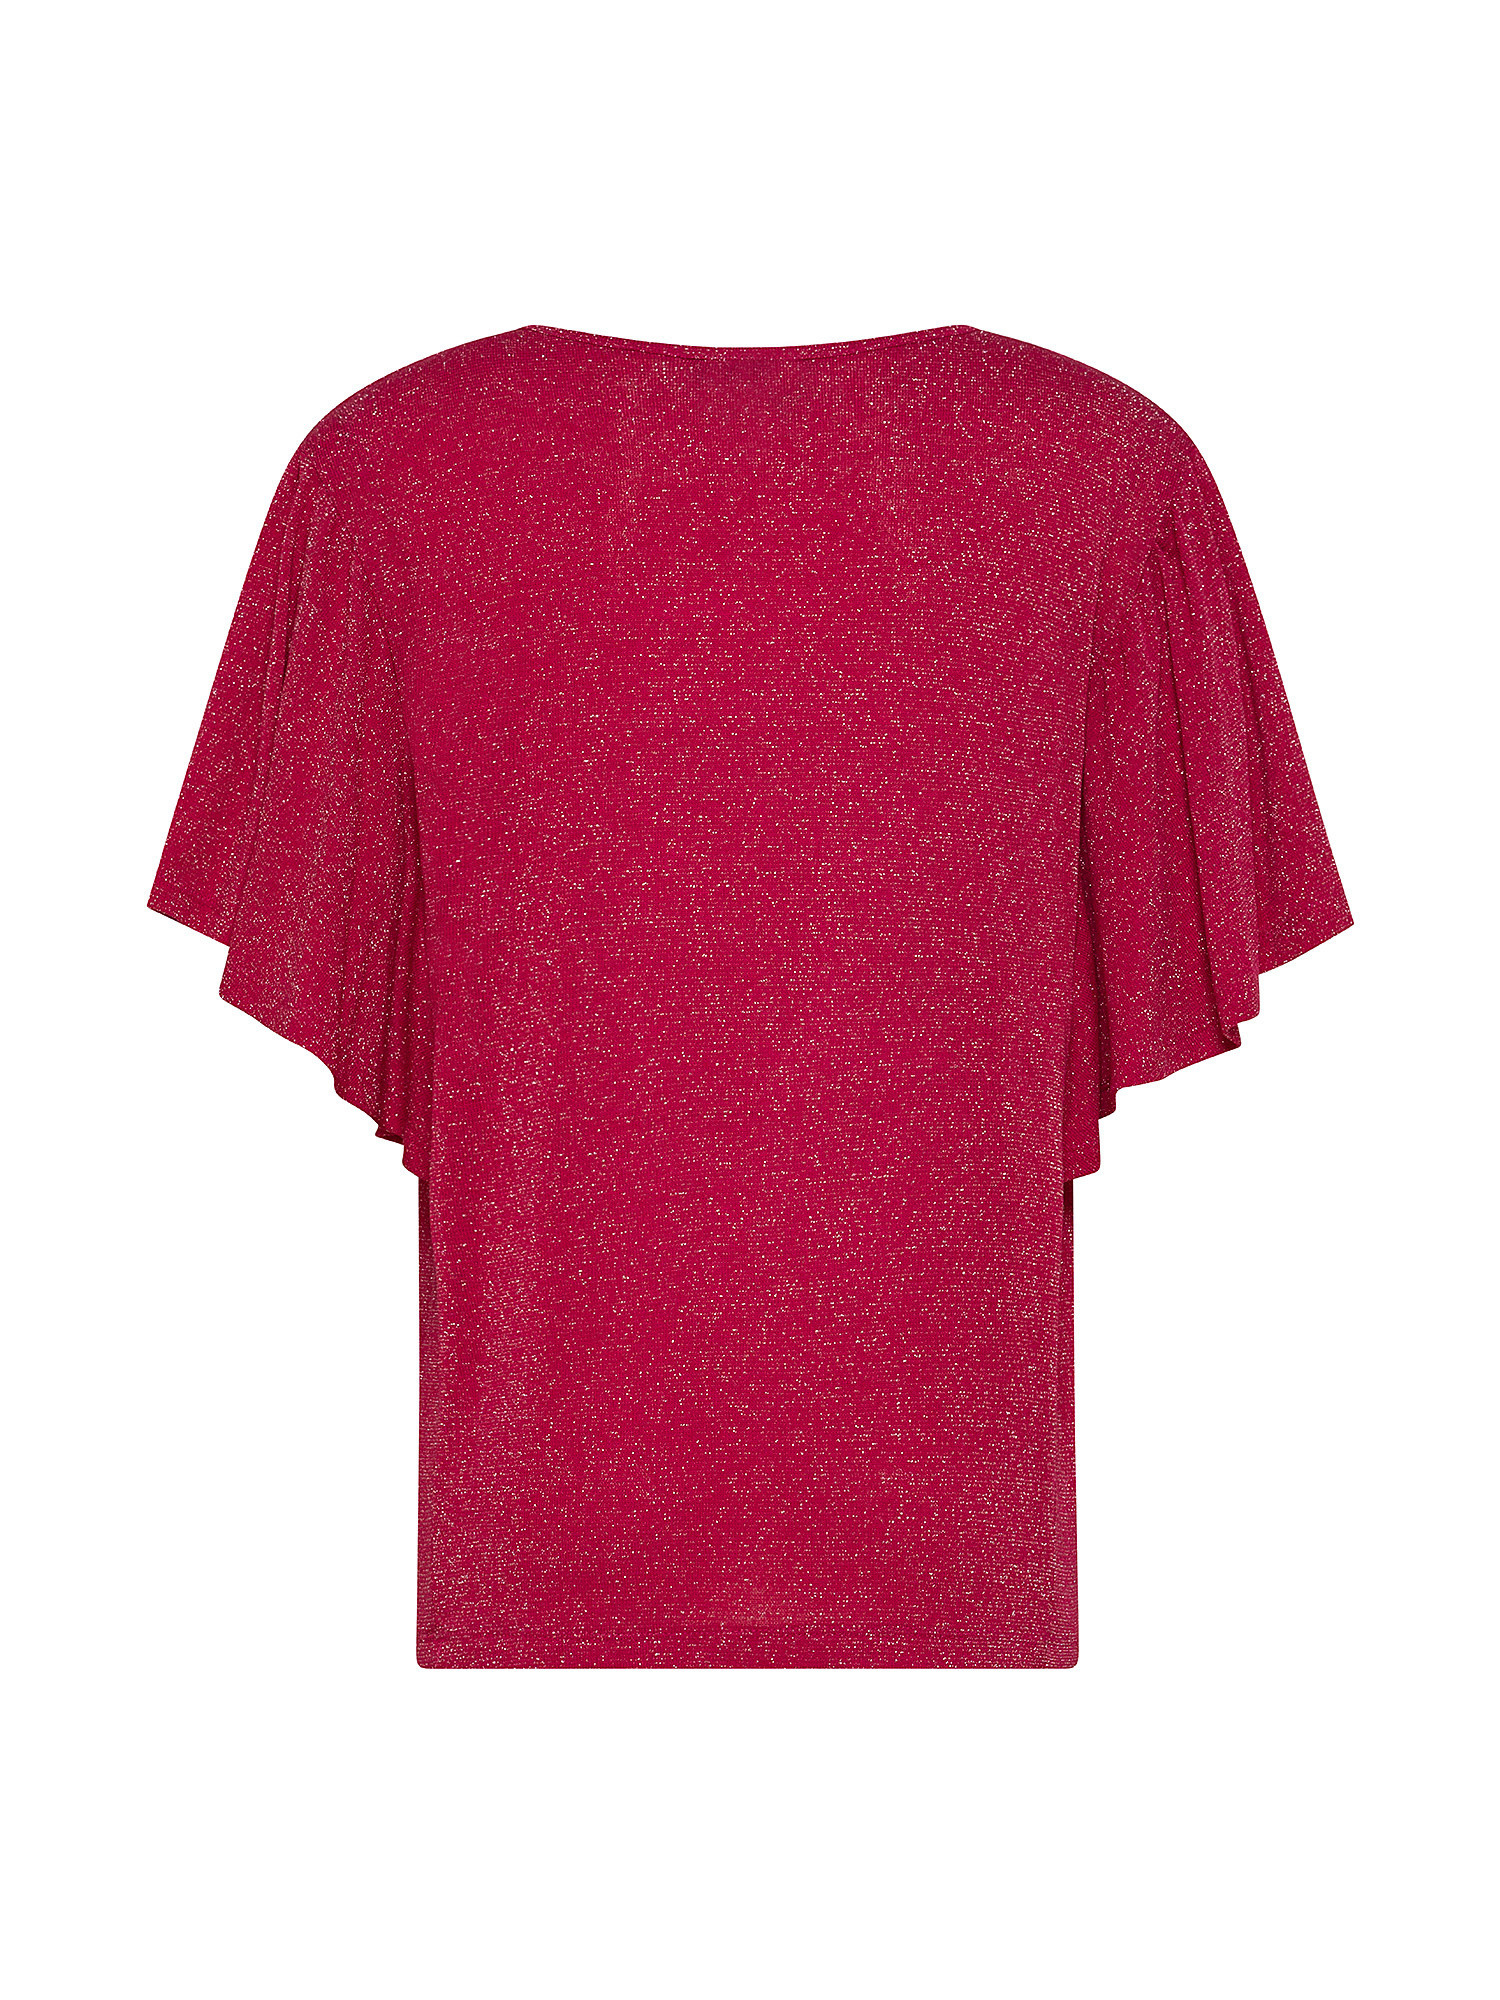 Bat sleeve T-shirt, Pink Fuchsia, large image number 1